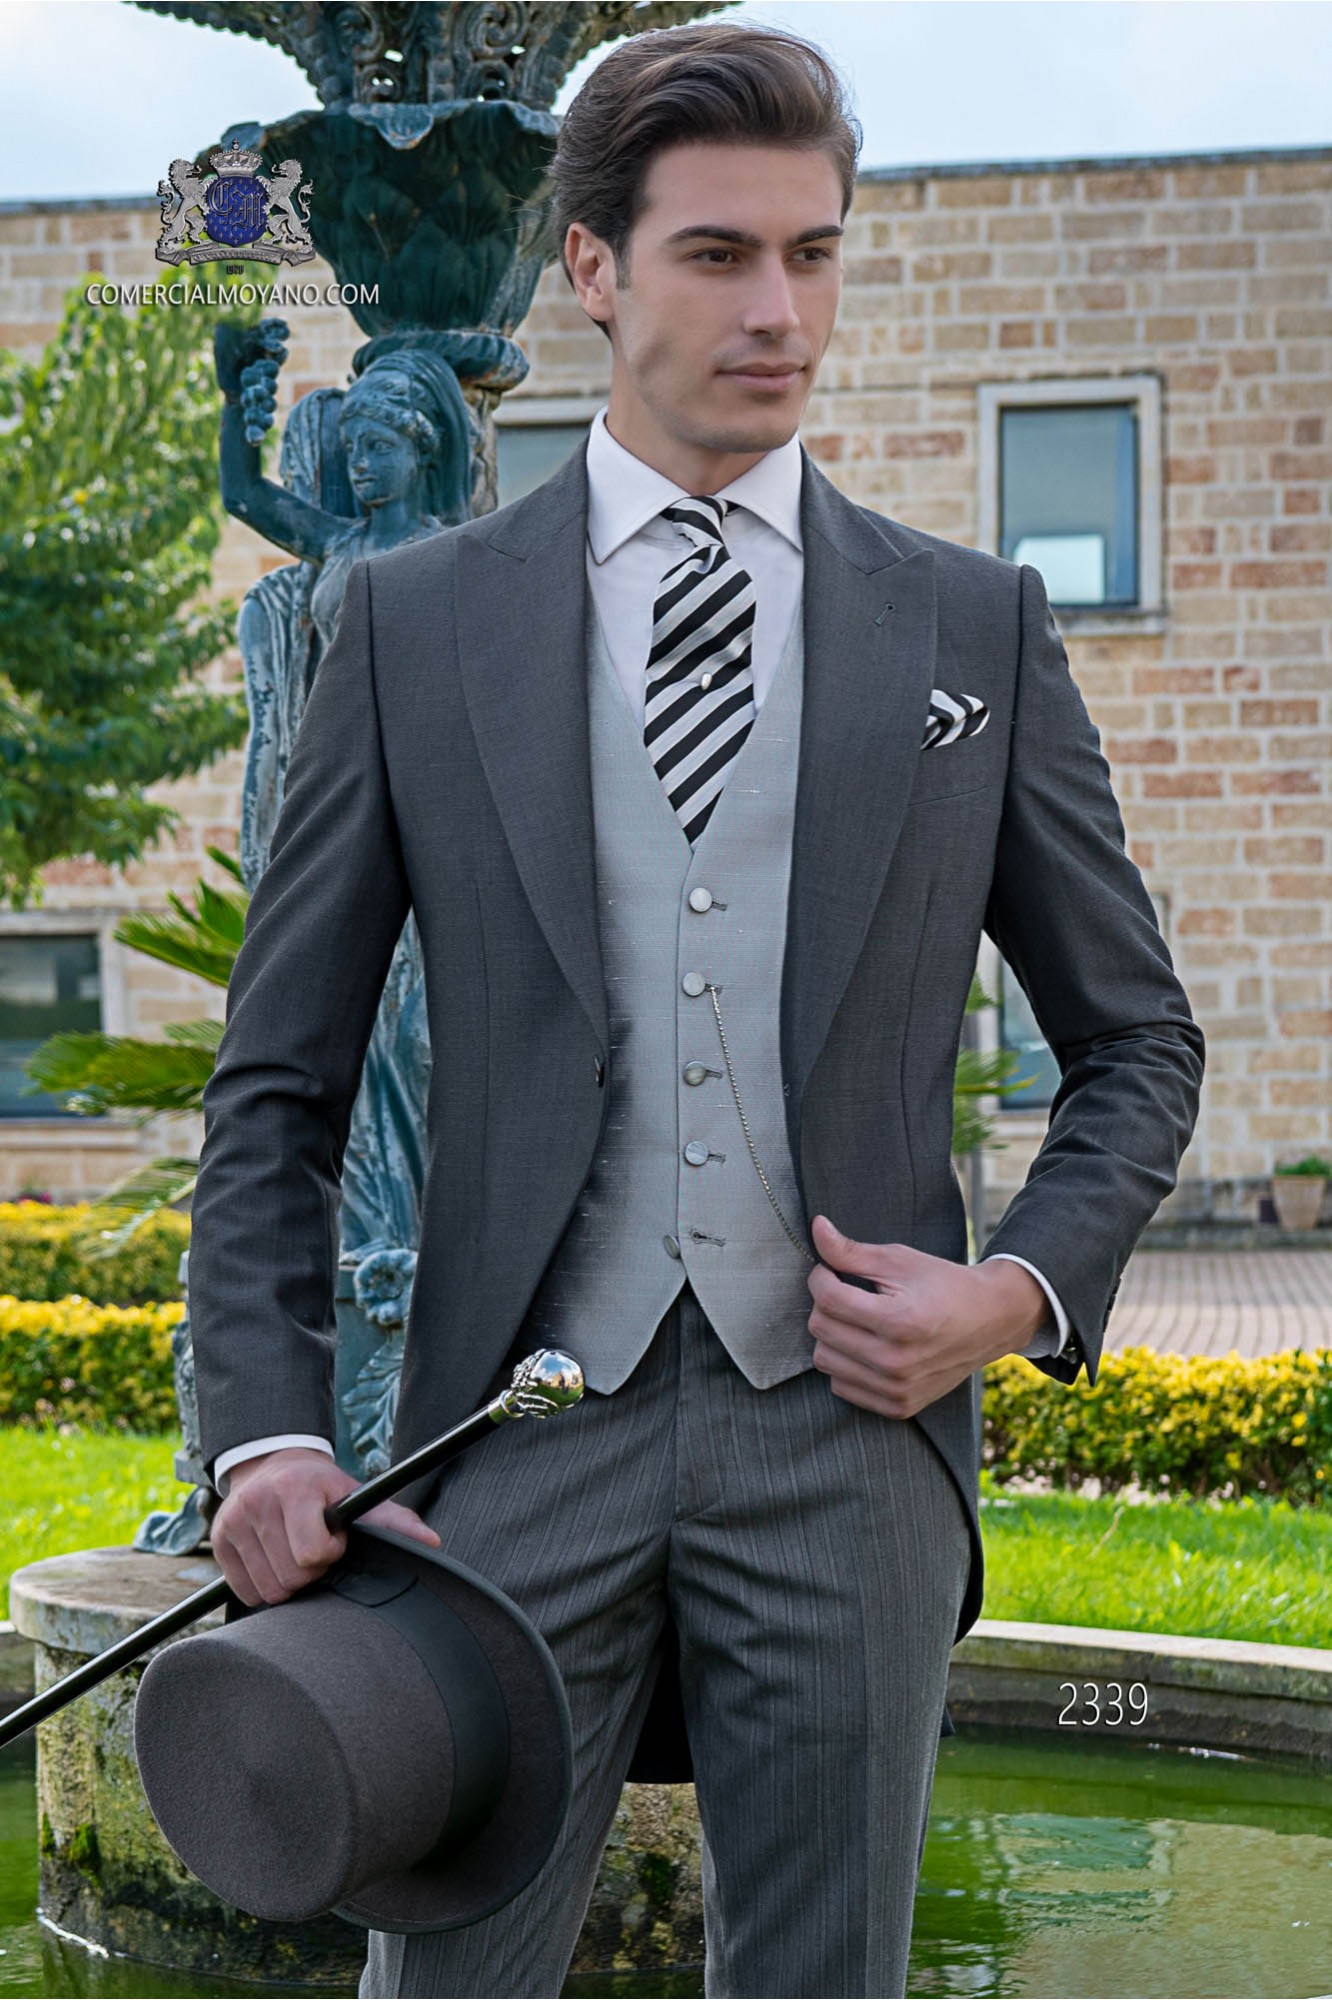 Chaqué de novio gris marengo tejido lana alpaca con pantalón raya diplomática modelo: 2339 Mario Moyano colección Gentleman